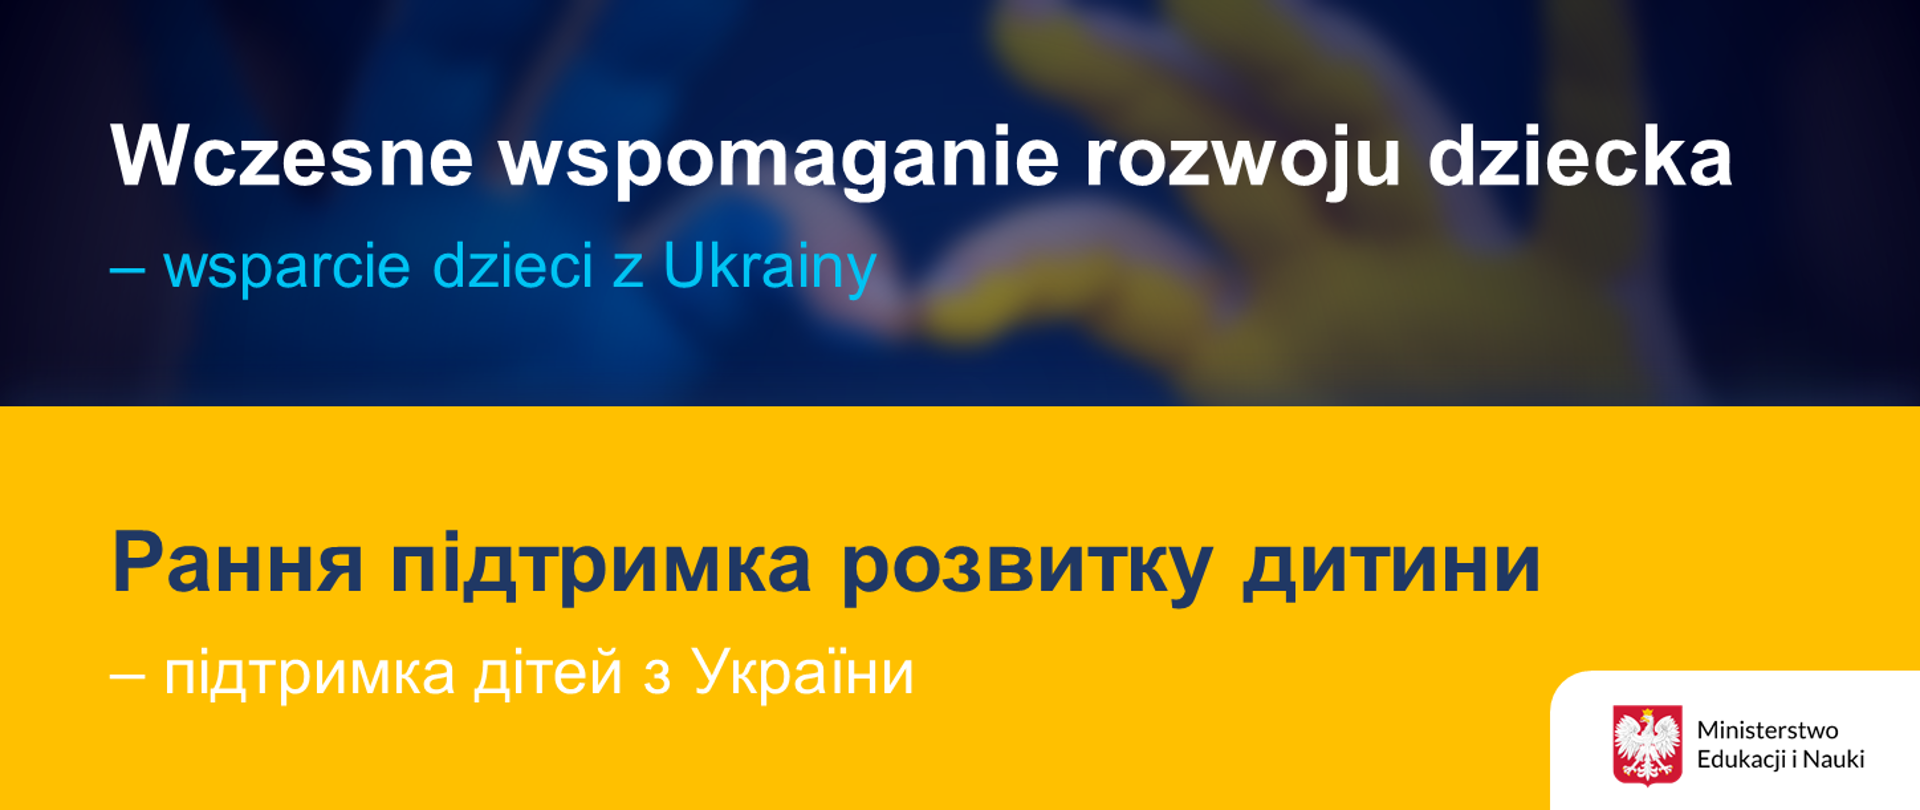 Grafika w kolorach niebieskim i żółtym, z napisem Wczesne wspomaganie rozwoju dziecka – wsparcie dzieci z Ukrainy.